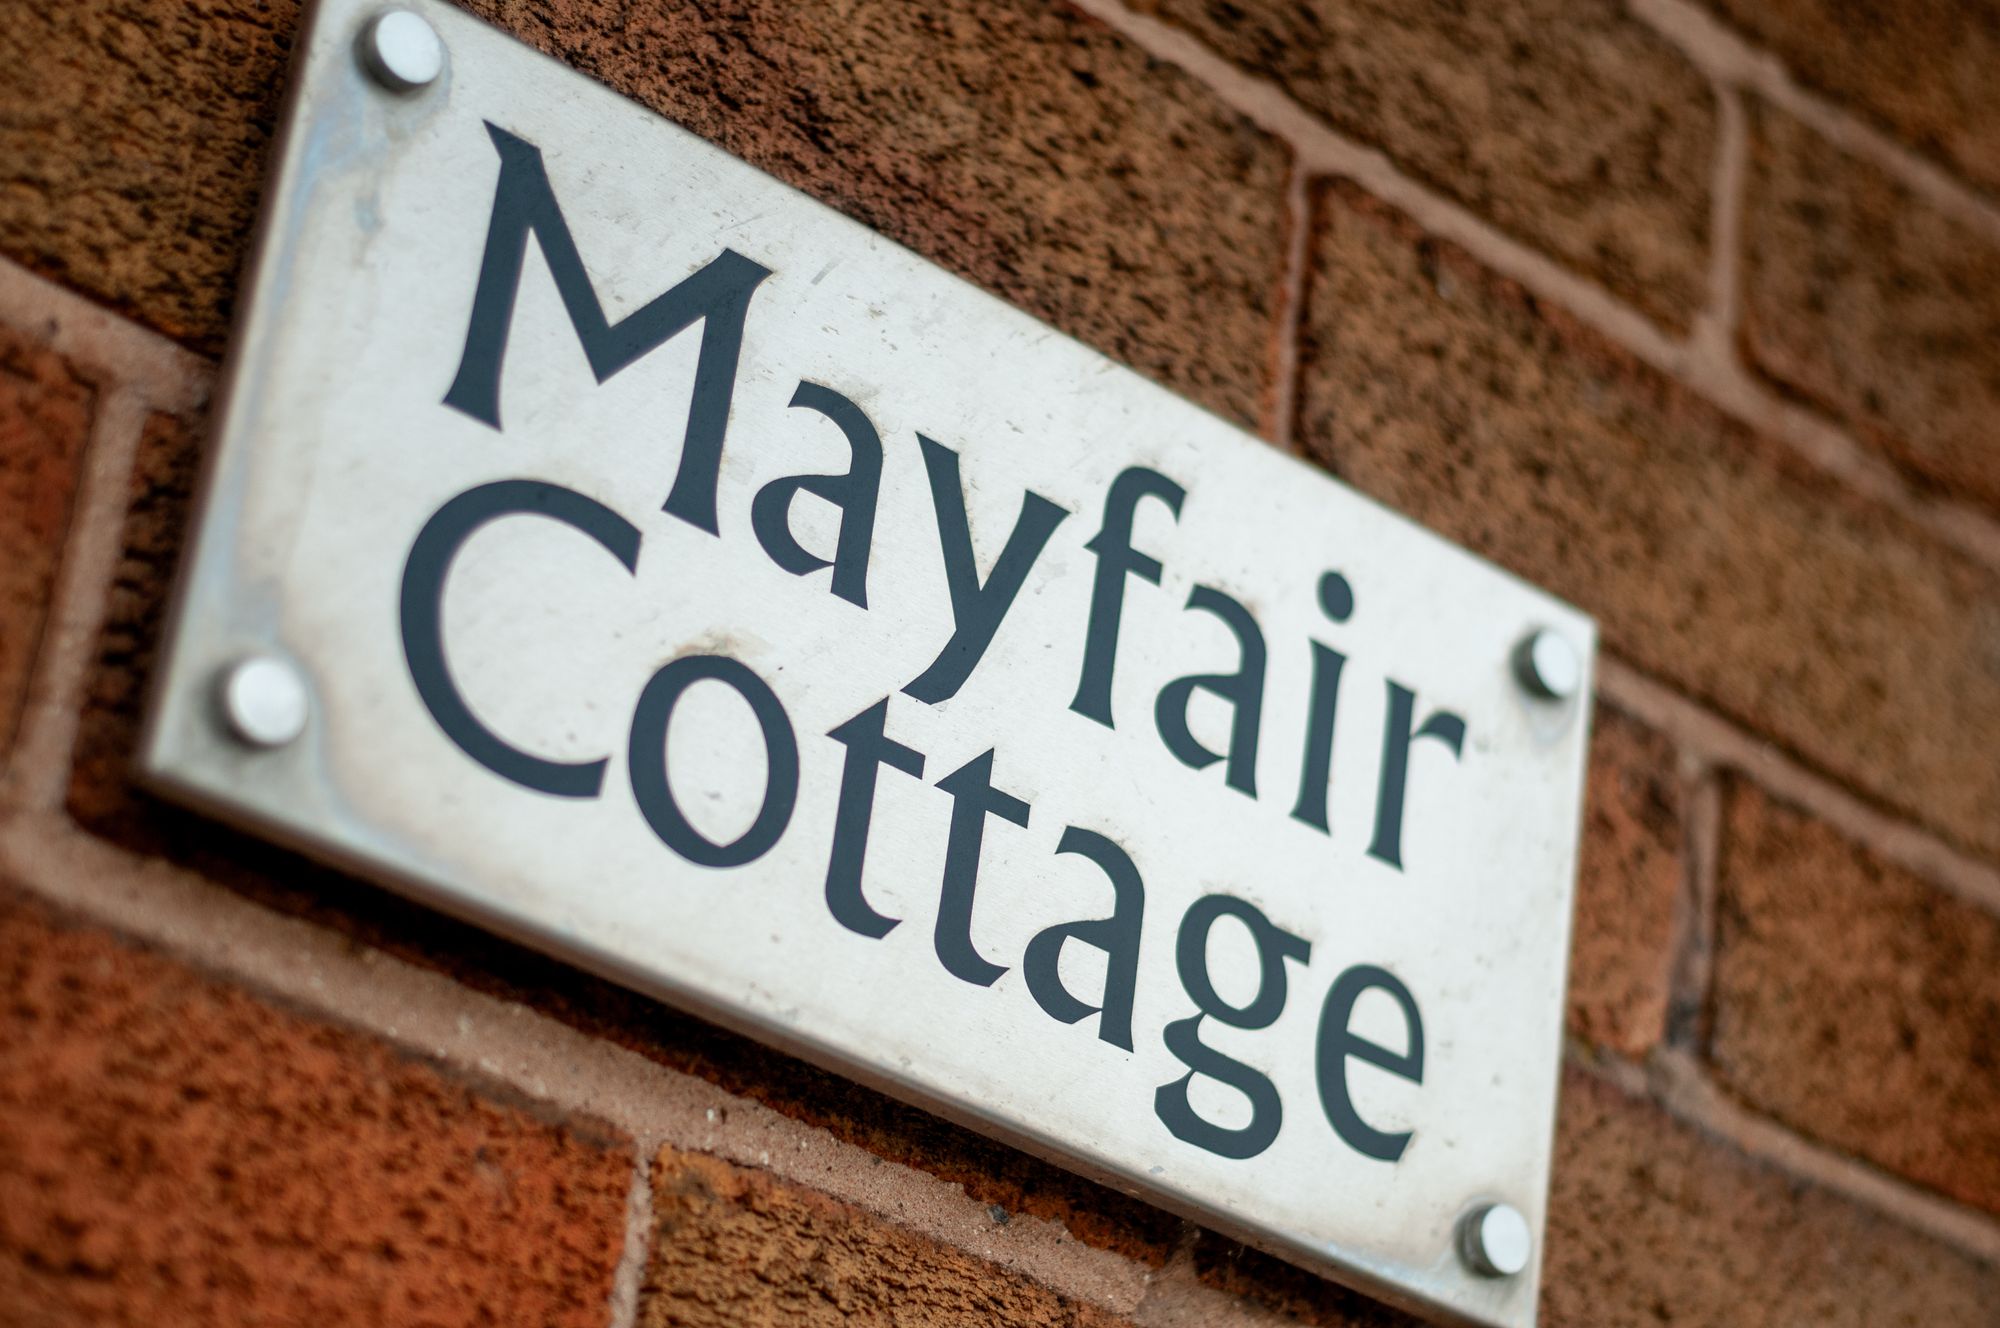 Mayfair Cottage Red Delph Lane, St. Helens